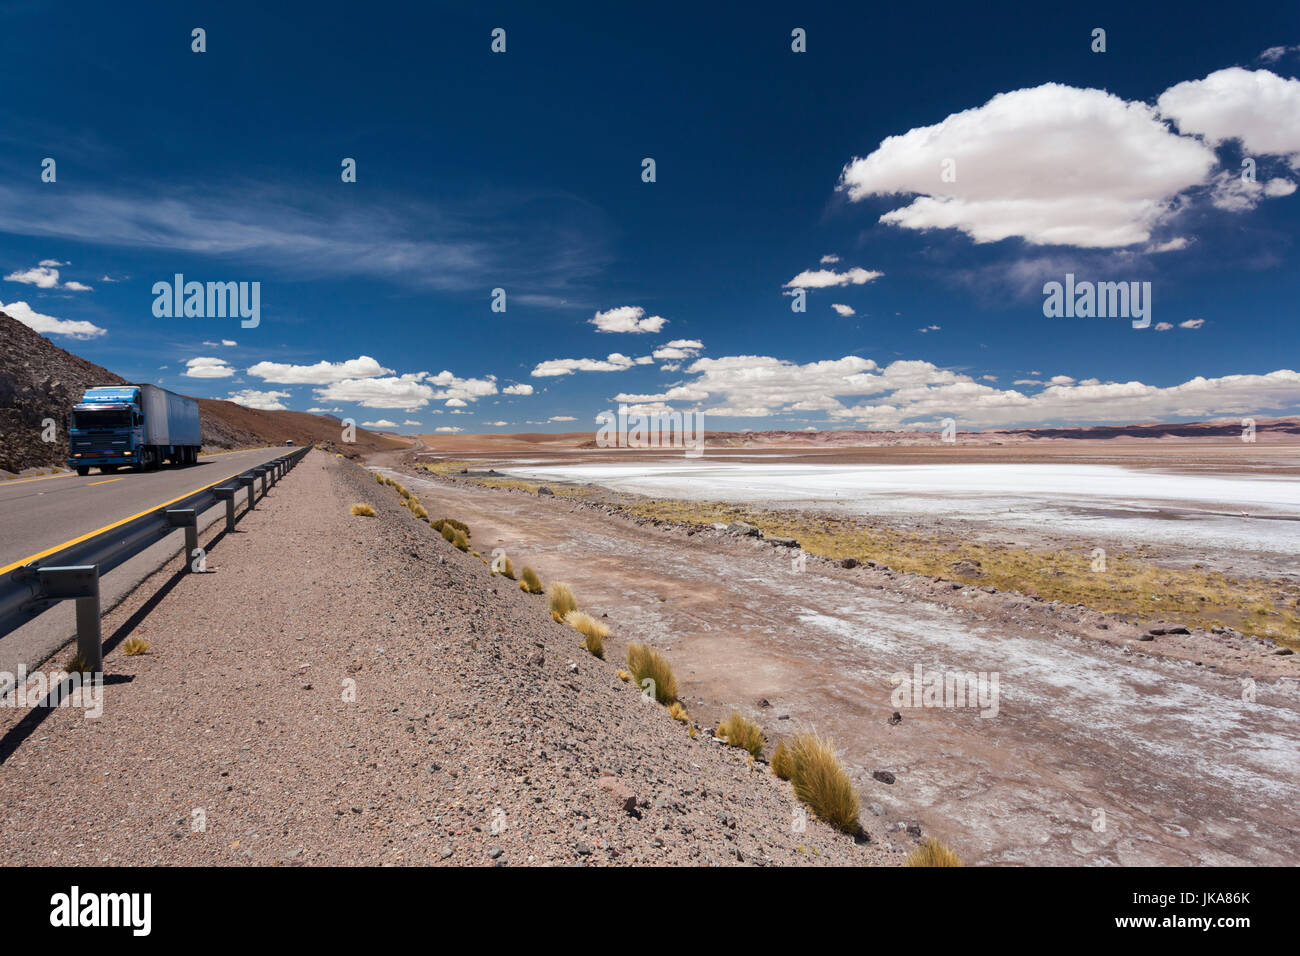 Chile, Atacama Desert, Ruta 27 CH highway Stock Photo